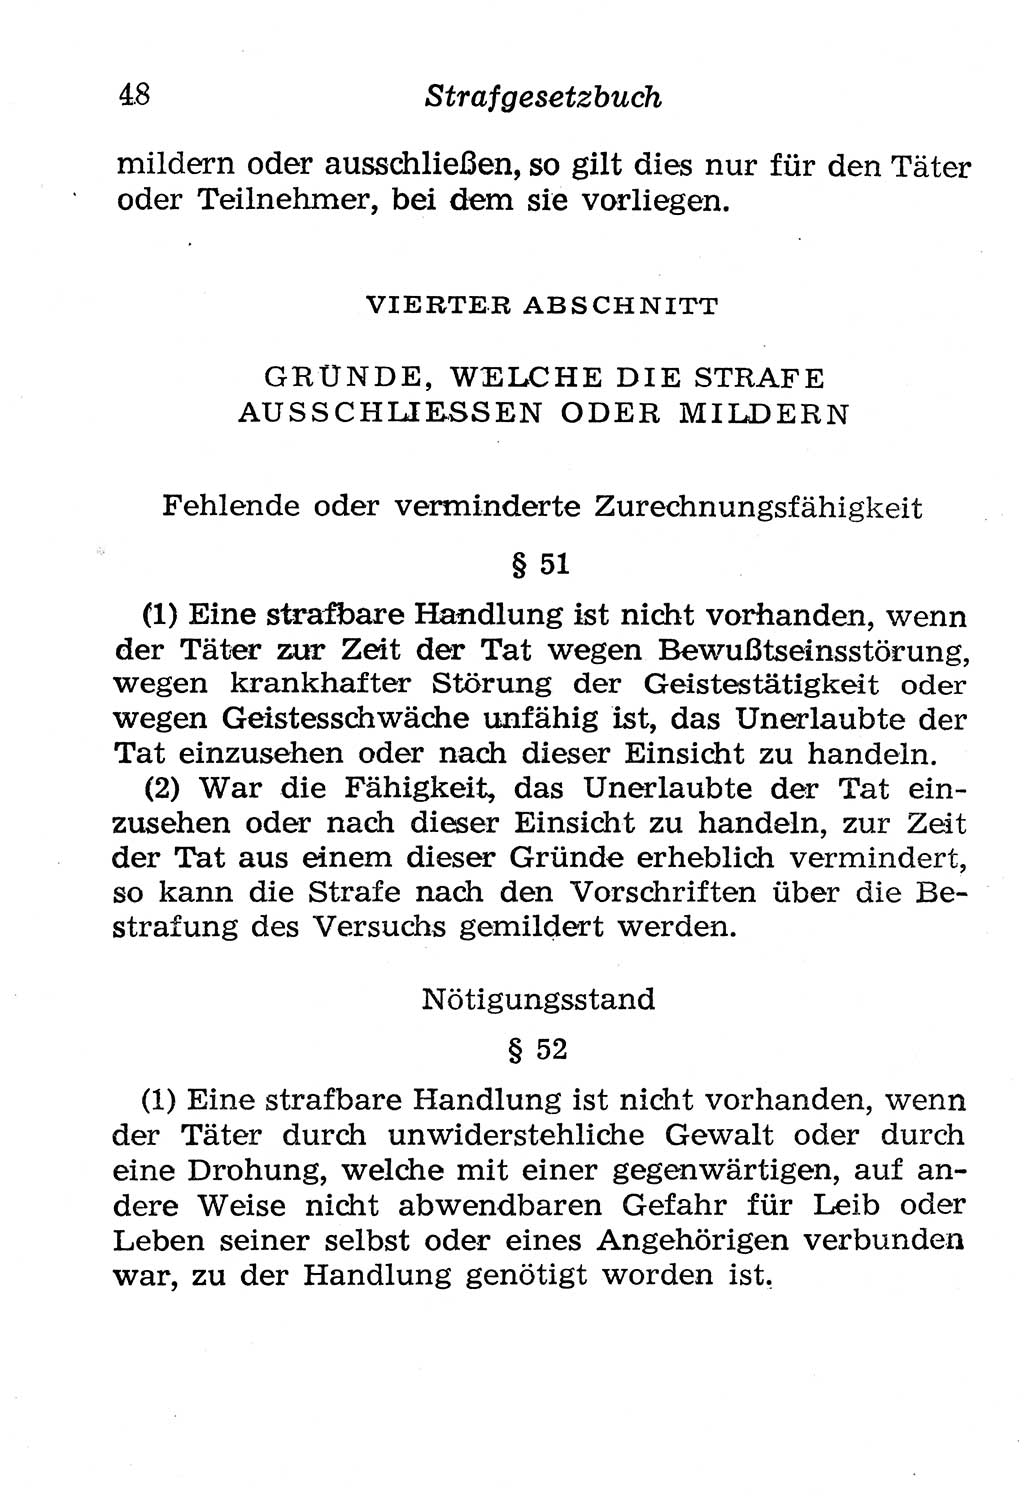 Strafgesetzbuch (StGB) und andere Strafgesetze [Deutsche Demokratische Republik (DDR)] 1958, Seite 48 (StGB Strafges. DDR 1958, S. 48)